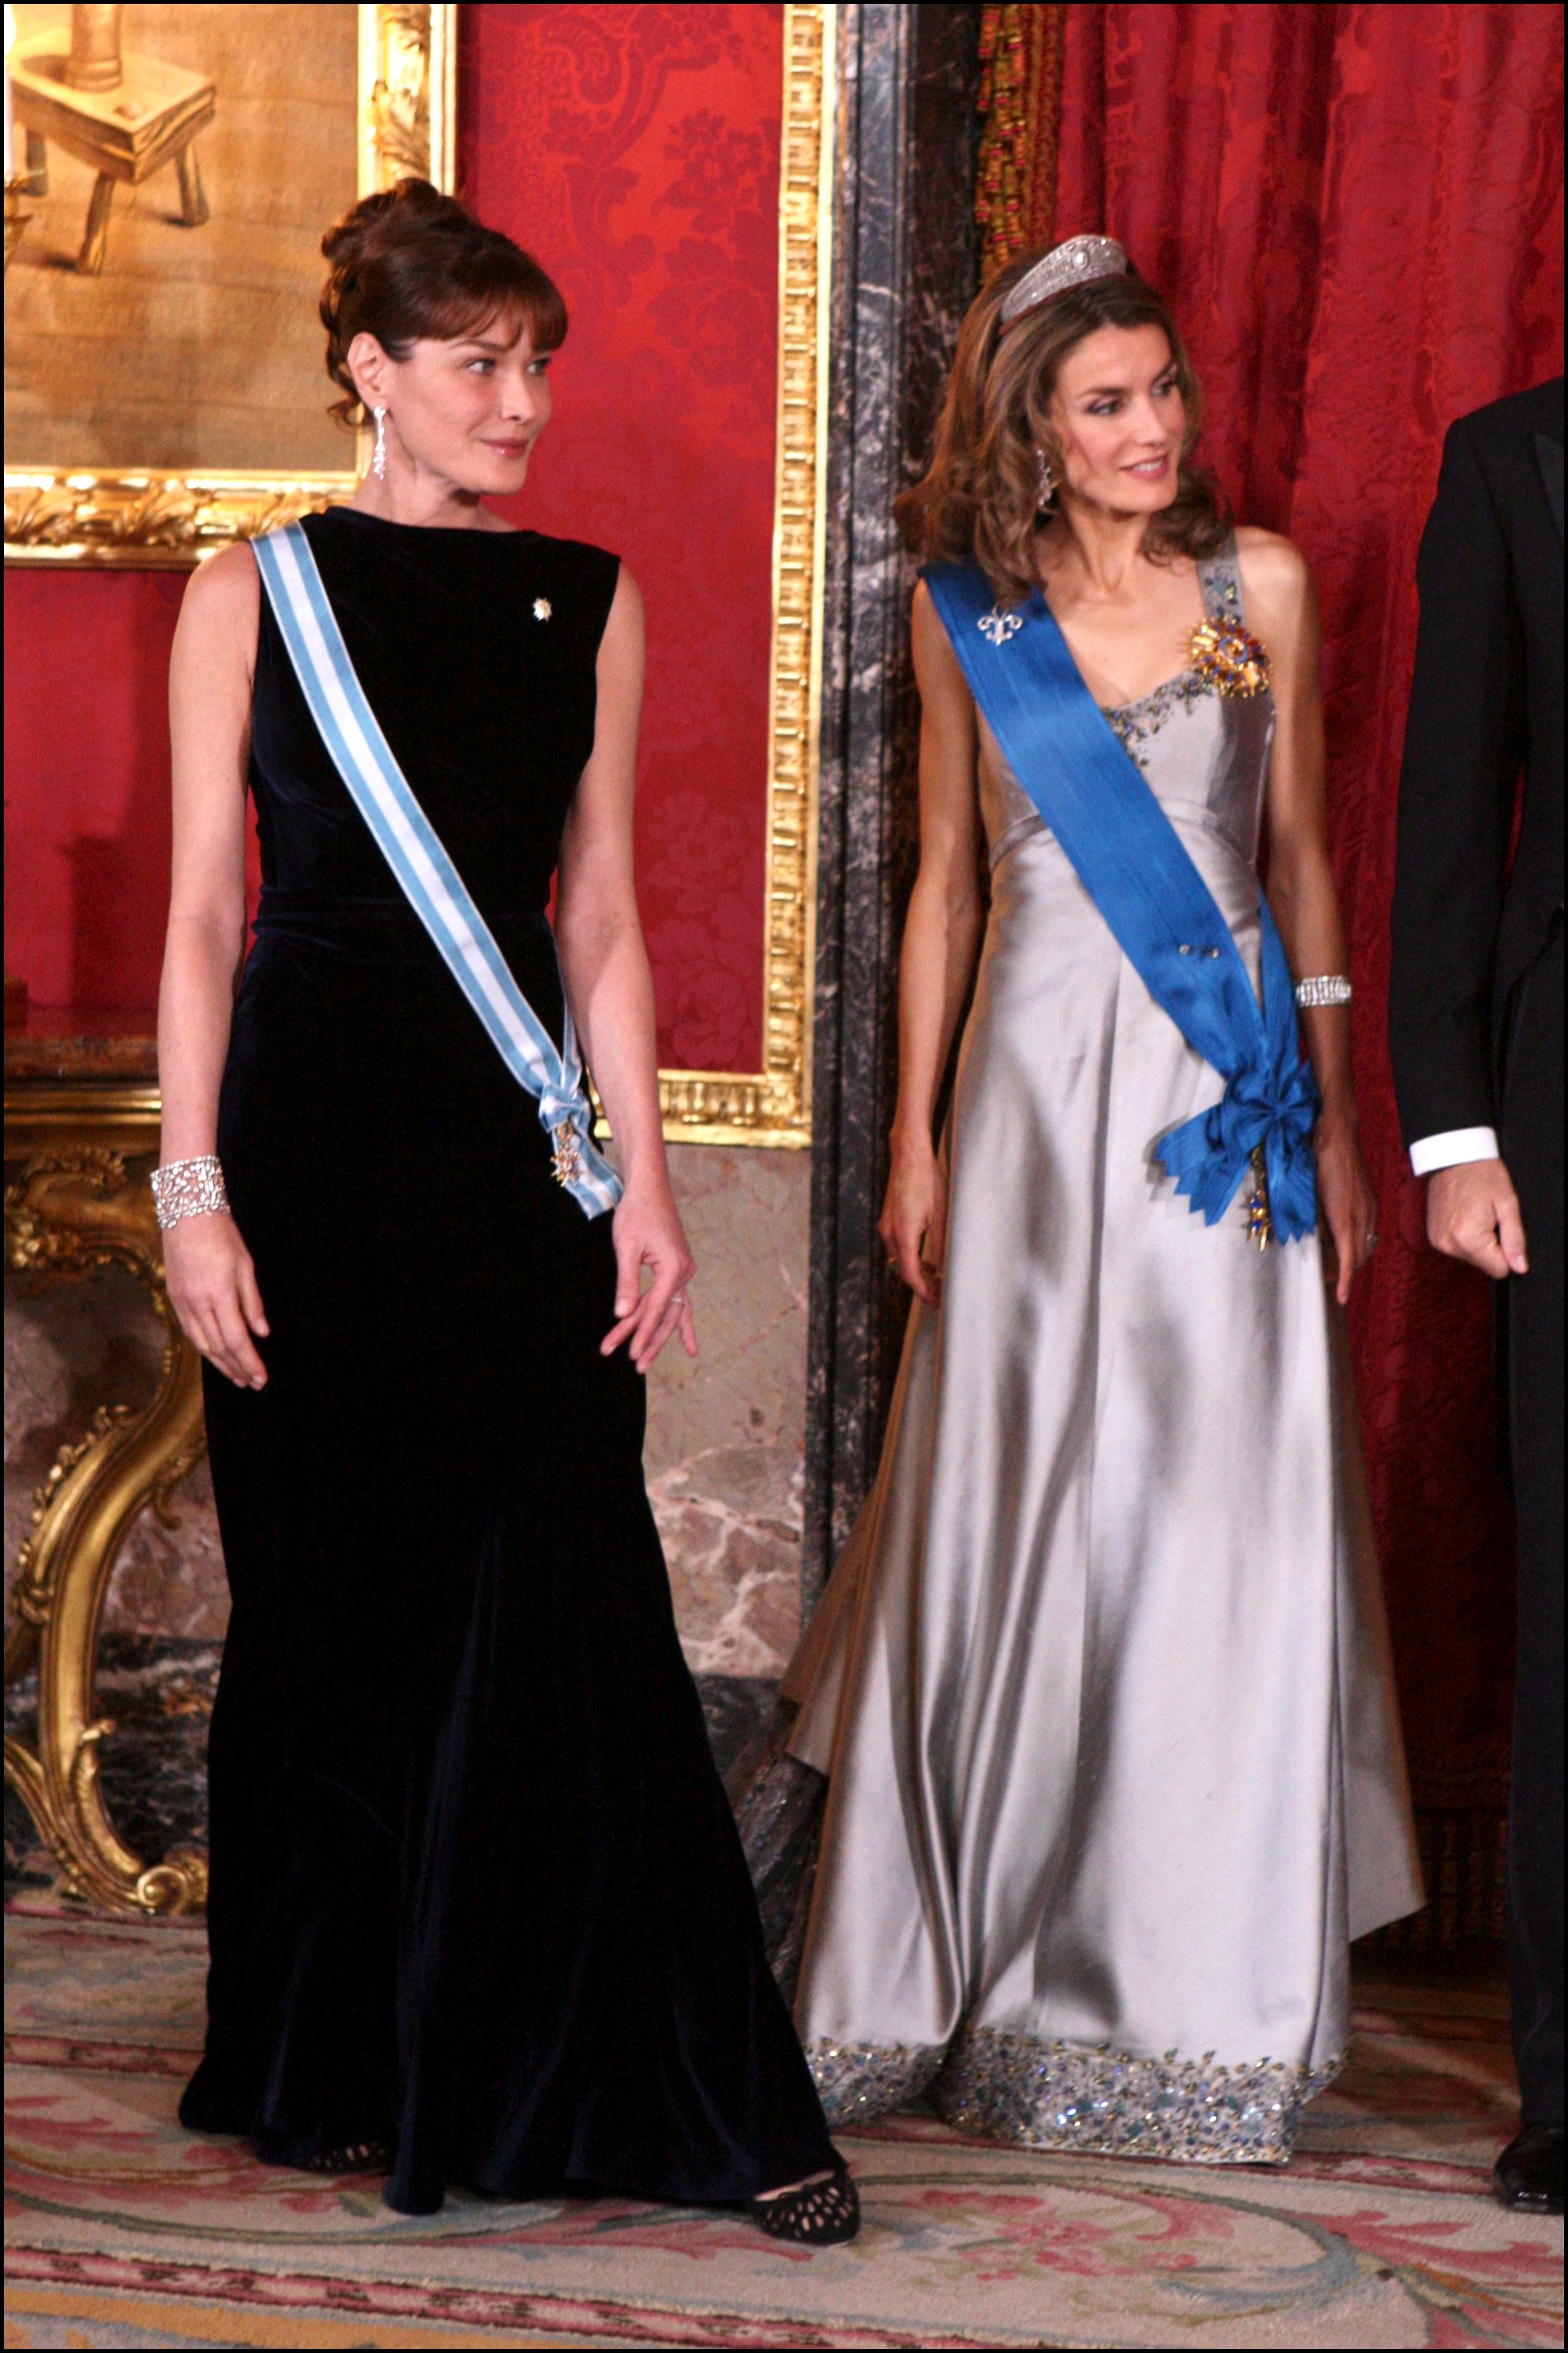 Doña Letizia con el vestido de Caprile reformado, junto a Carla Bruni. Foto: Gtres.